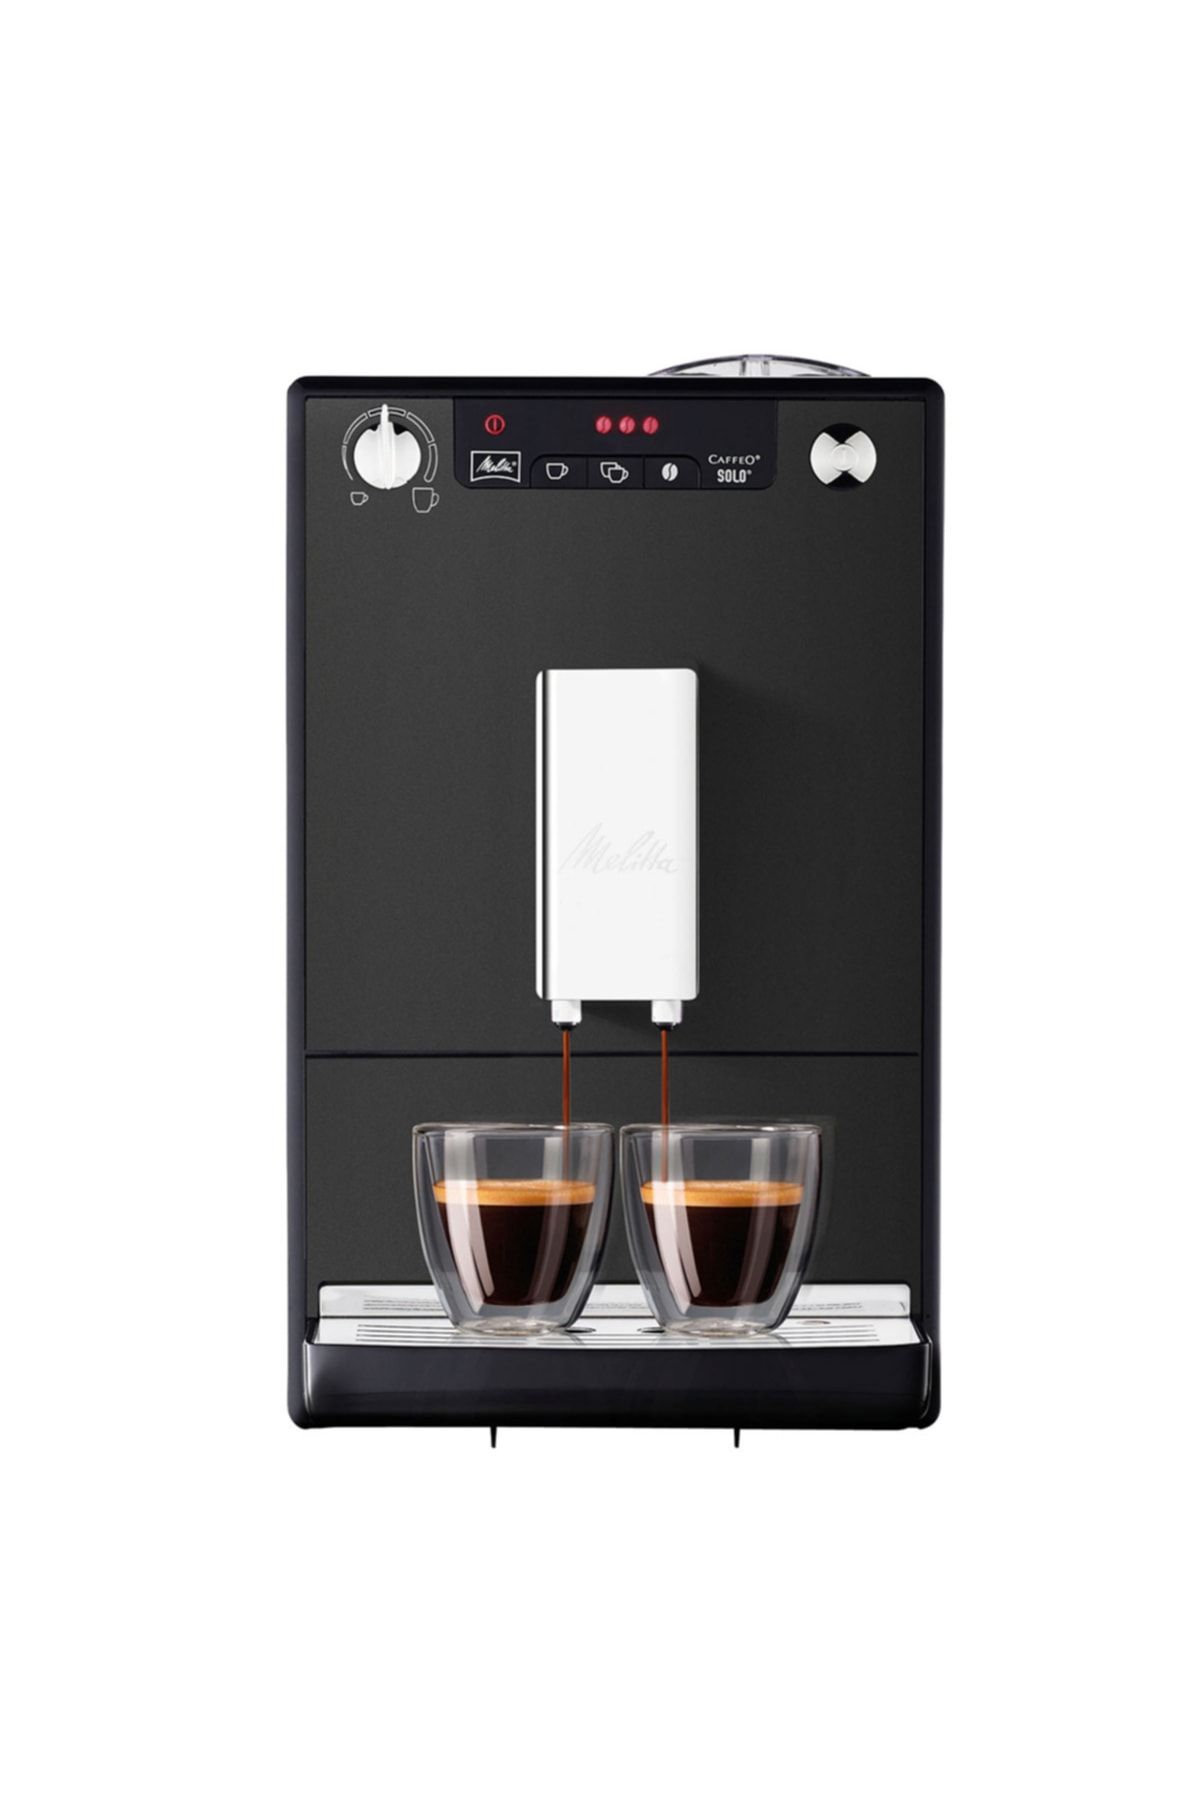 melitta Caffeo Solo Tam Otomatik Kahve Makinesi Buzlu Siyah